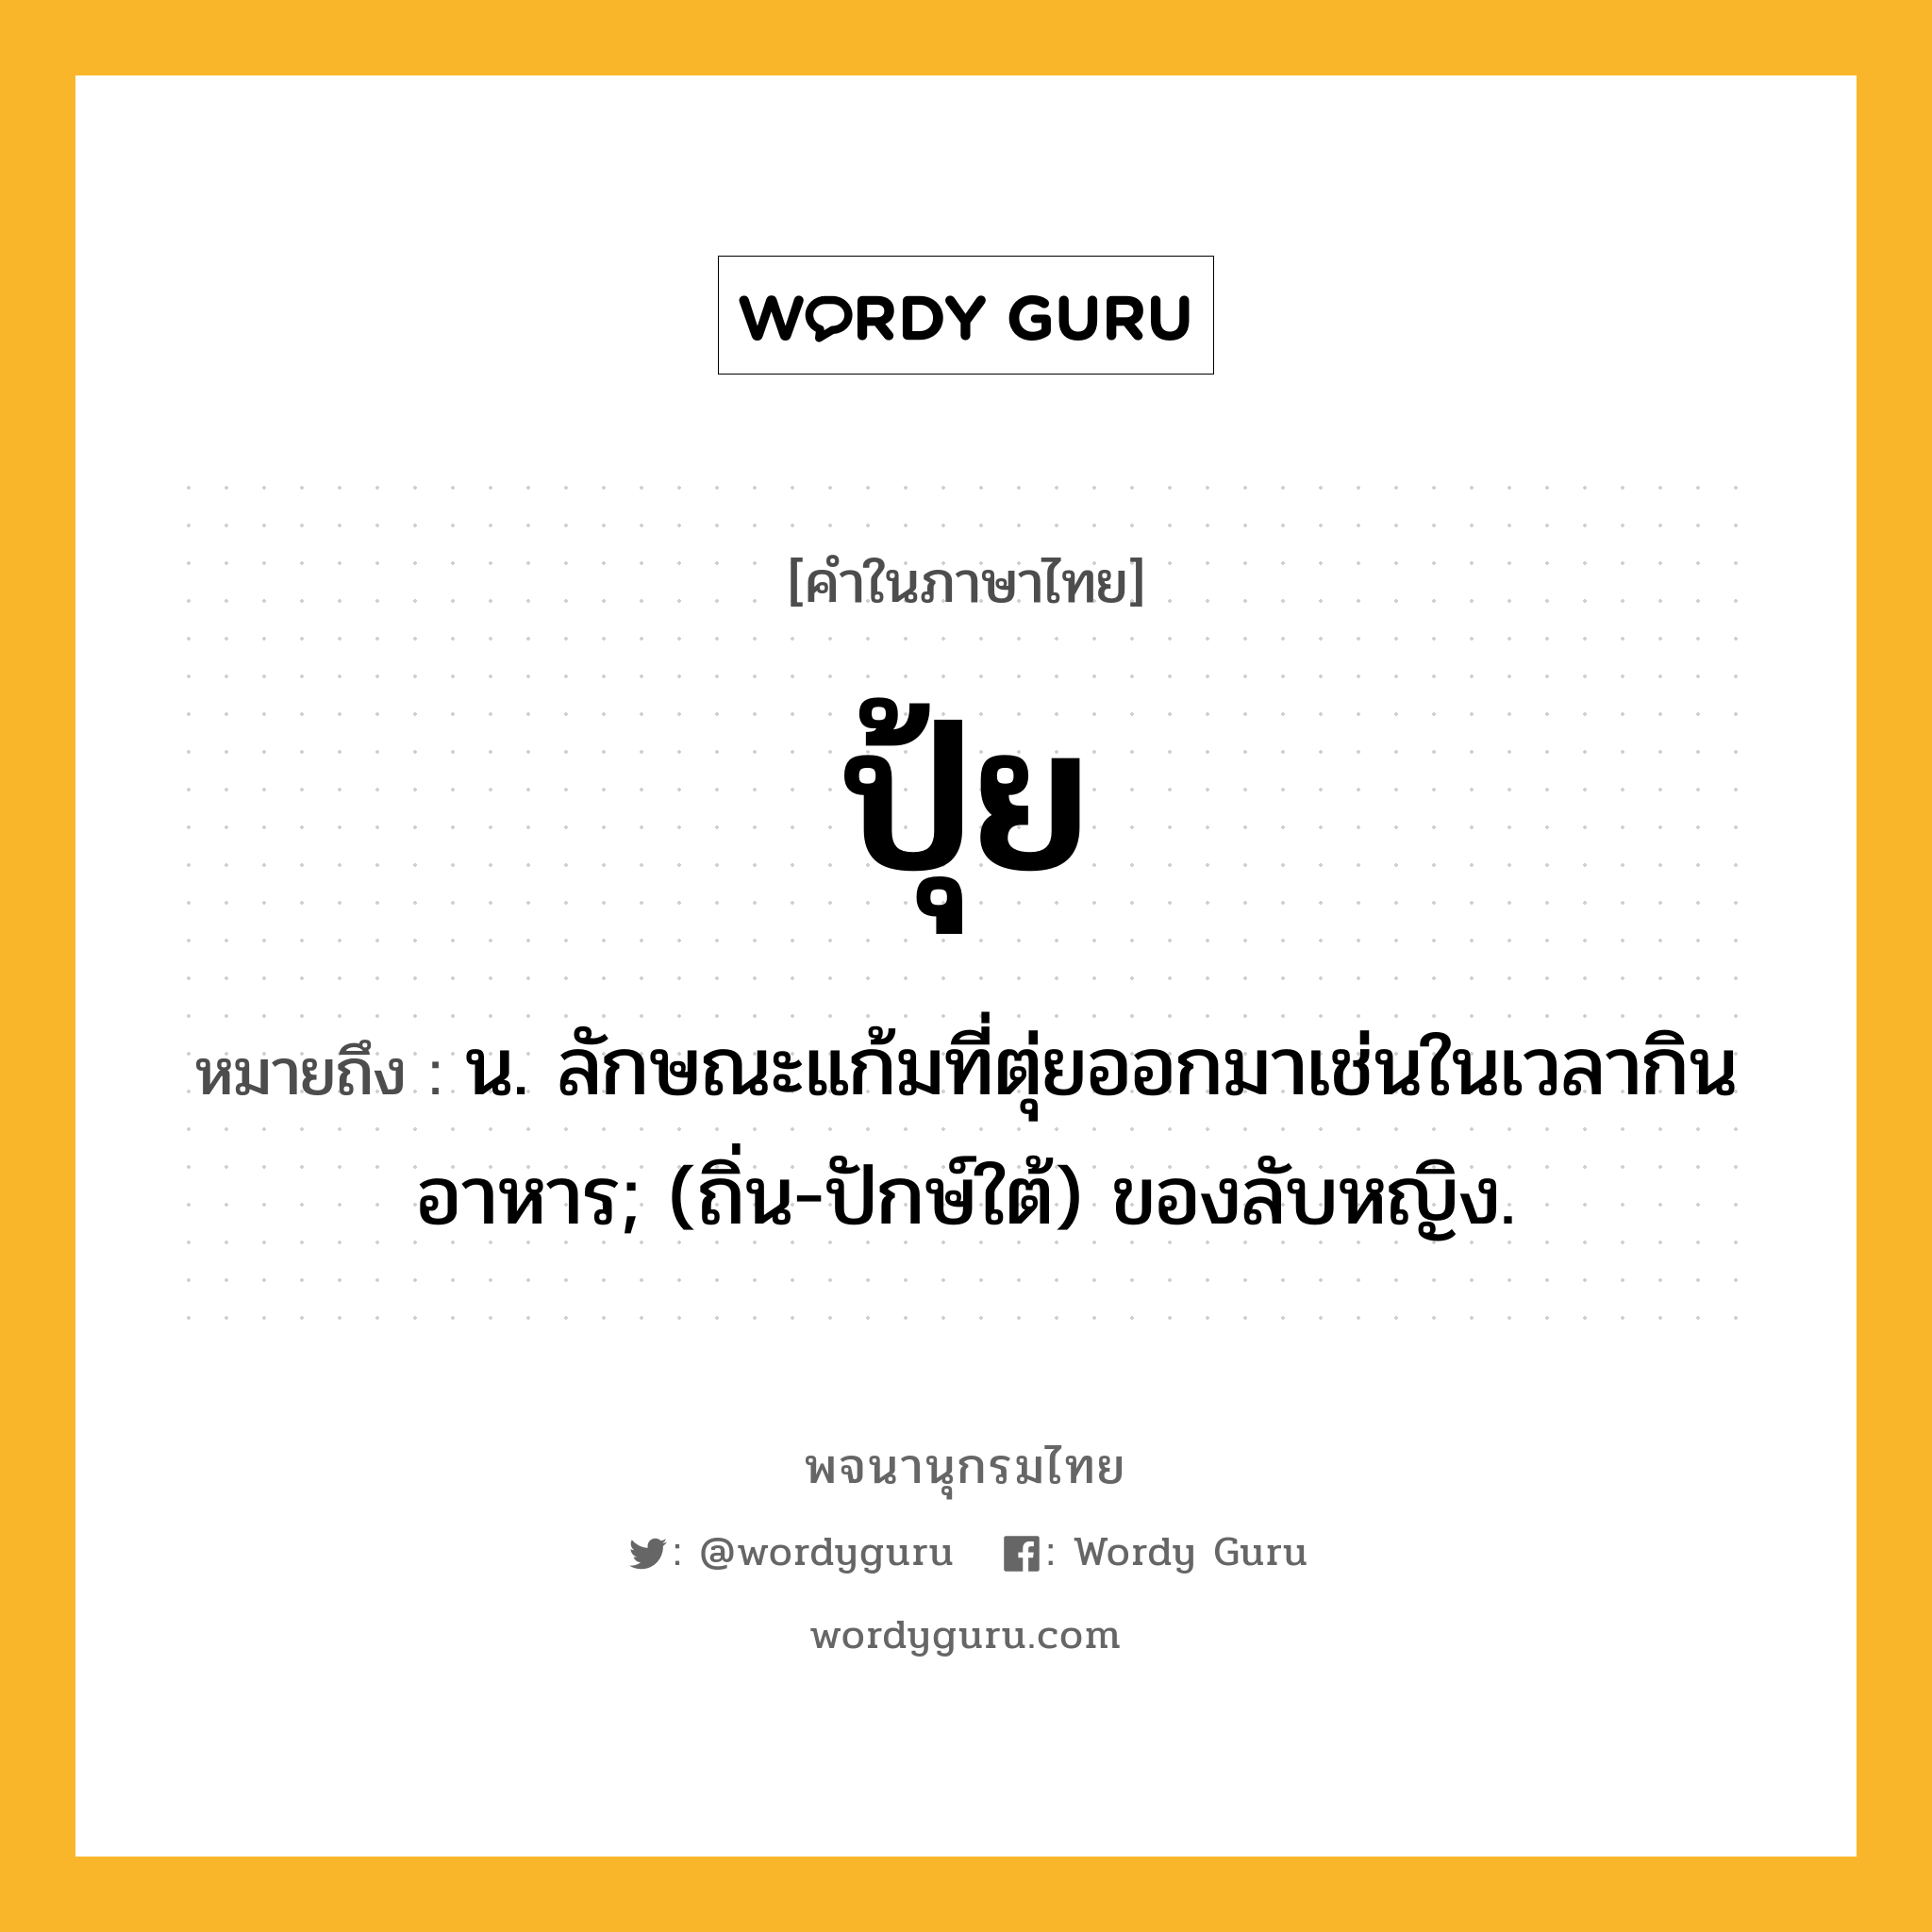 ปุ้ย หมายถึงอะไร?, คำในภาษาไทย ปุ้ย หมายถึง น. ลักษณะแก้มที่ตุ่ยออกมาเช่นในเวลากินอาหาร; (ถิ่น-ปักษ์ใต้) ของลับหญิง.